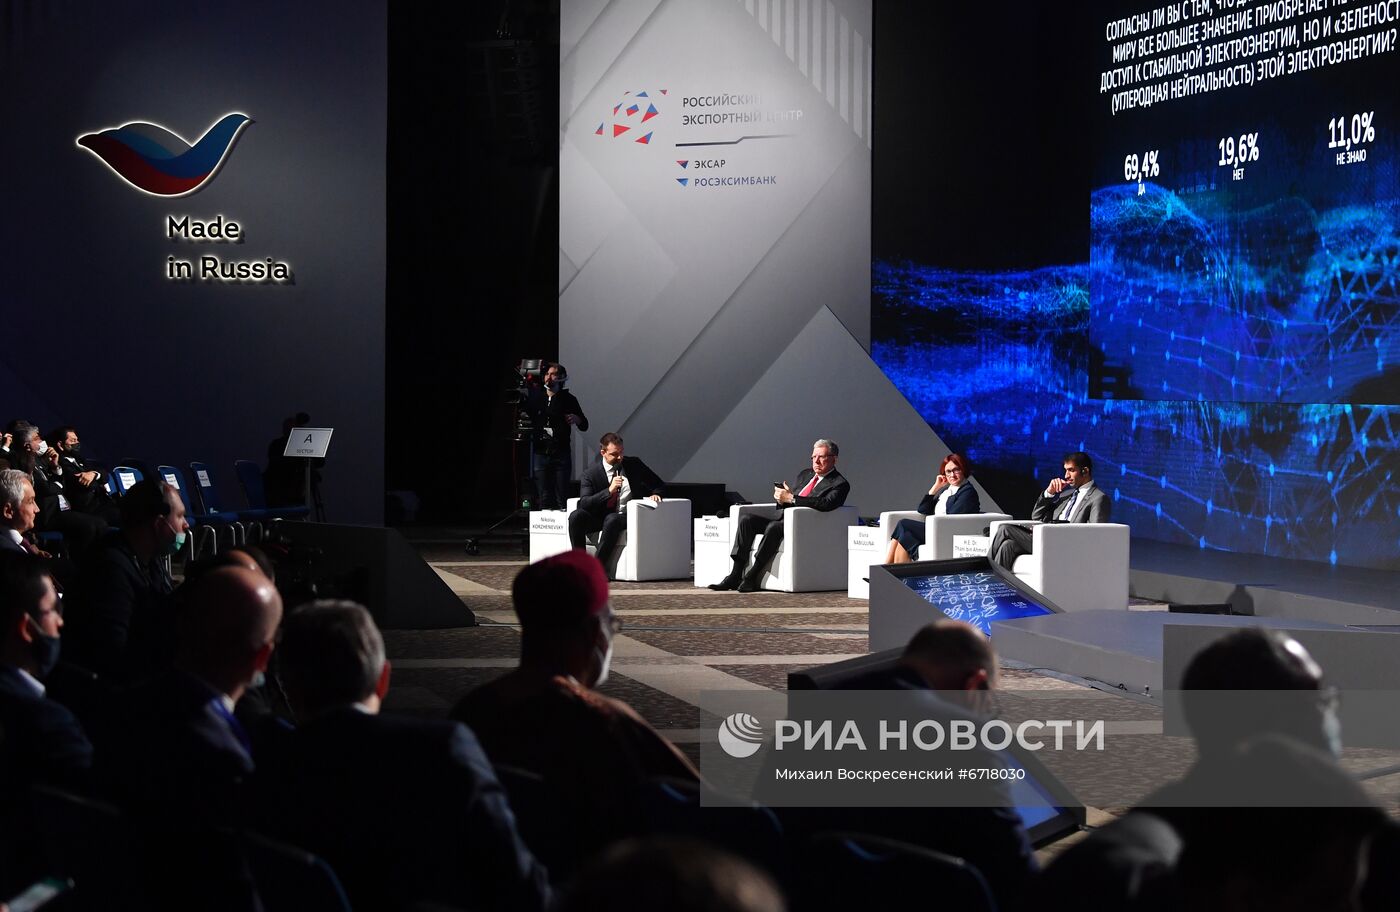 Международный экспортный форум "Сделано в России"